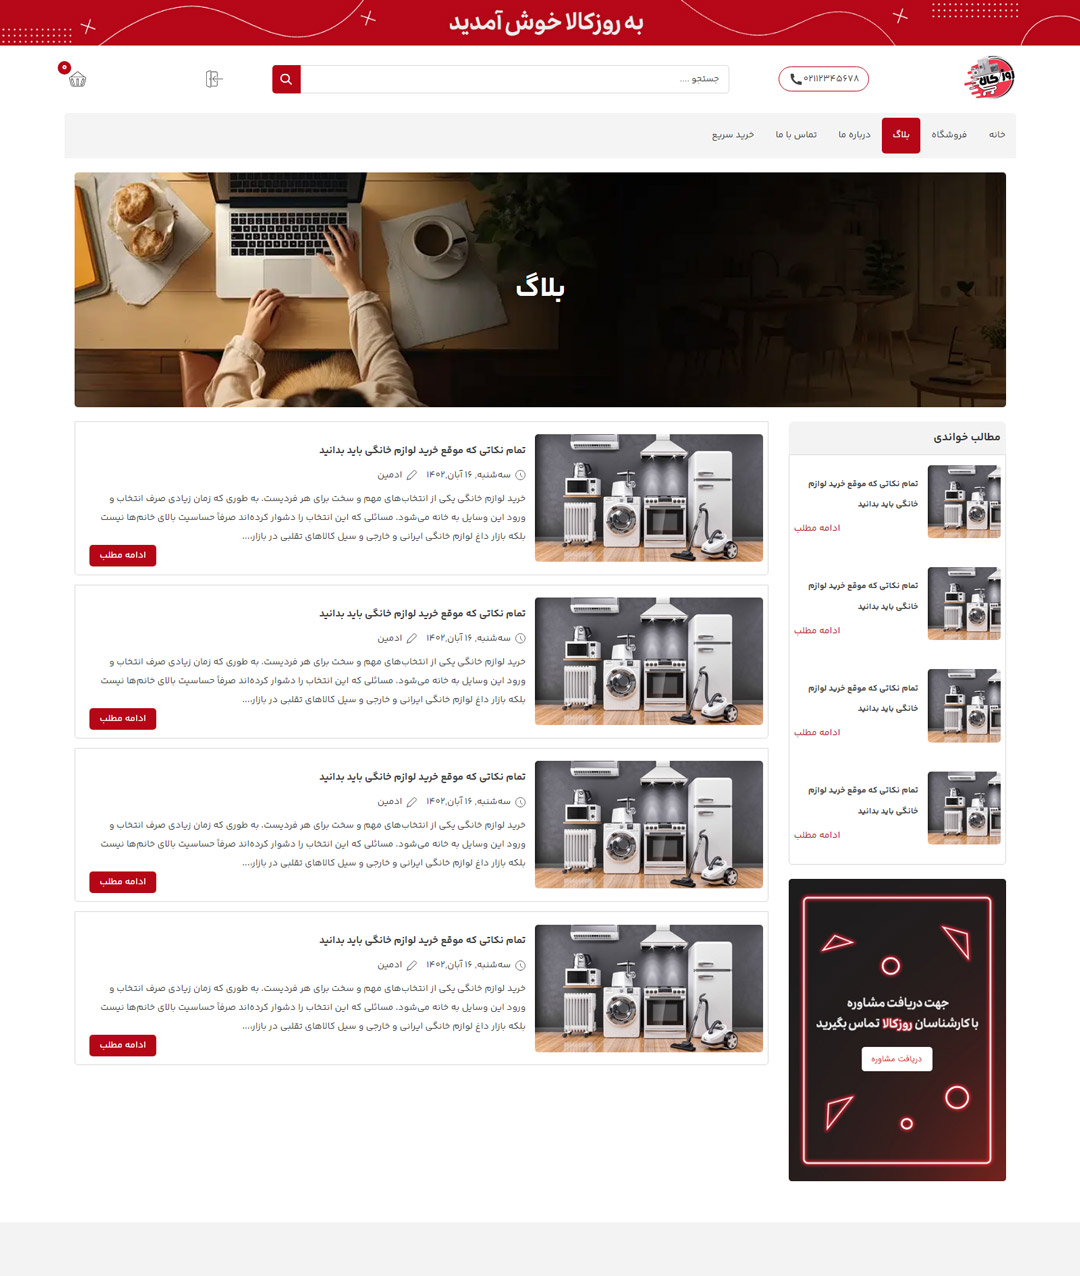 طراحی سایت فروشگاهی روزکالا